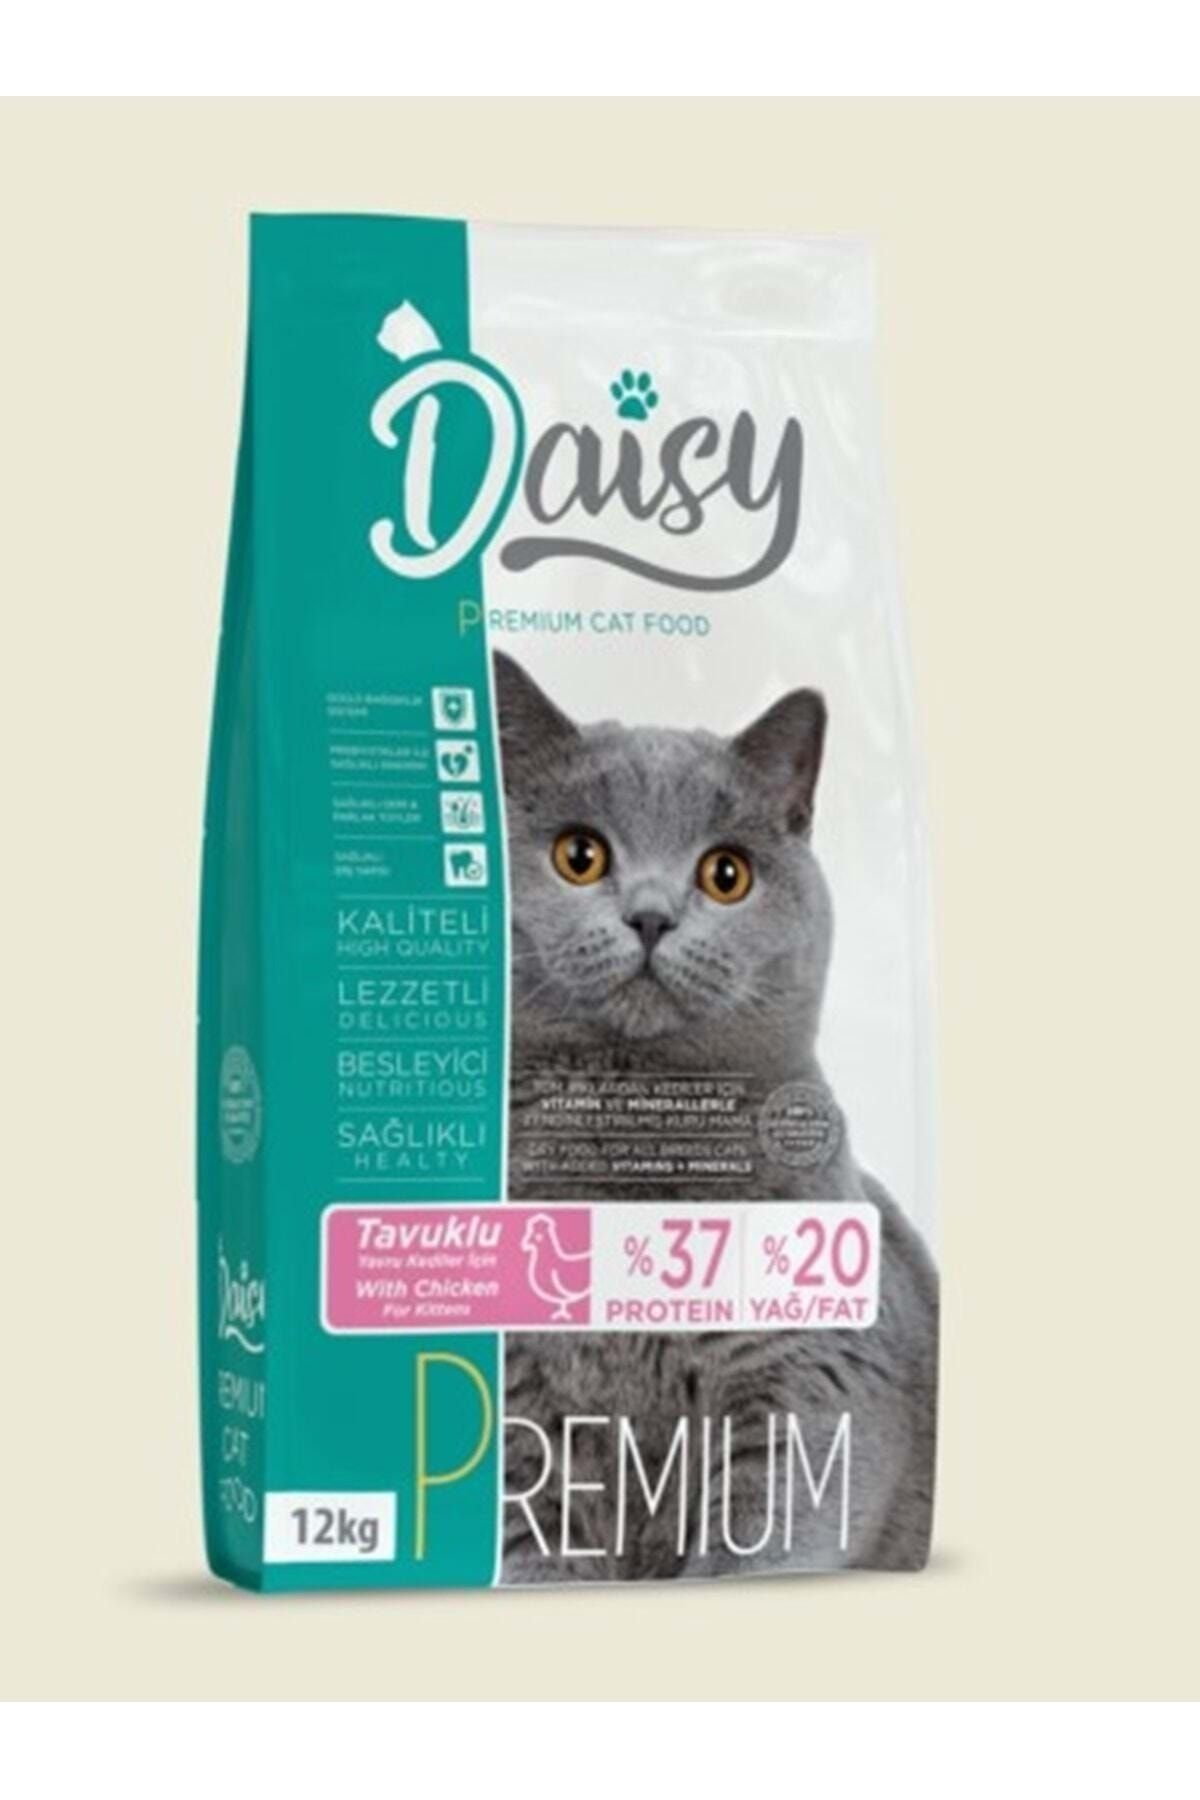 Daisy Premium Kitten Tavuk Etli Kedi Maması 12 Kg, Protein %37